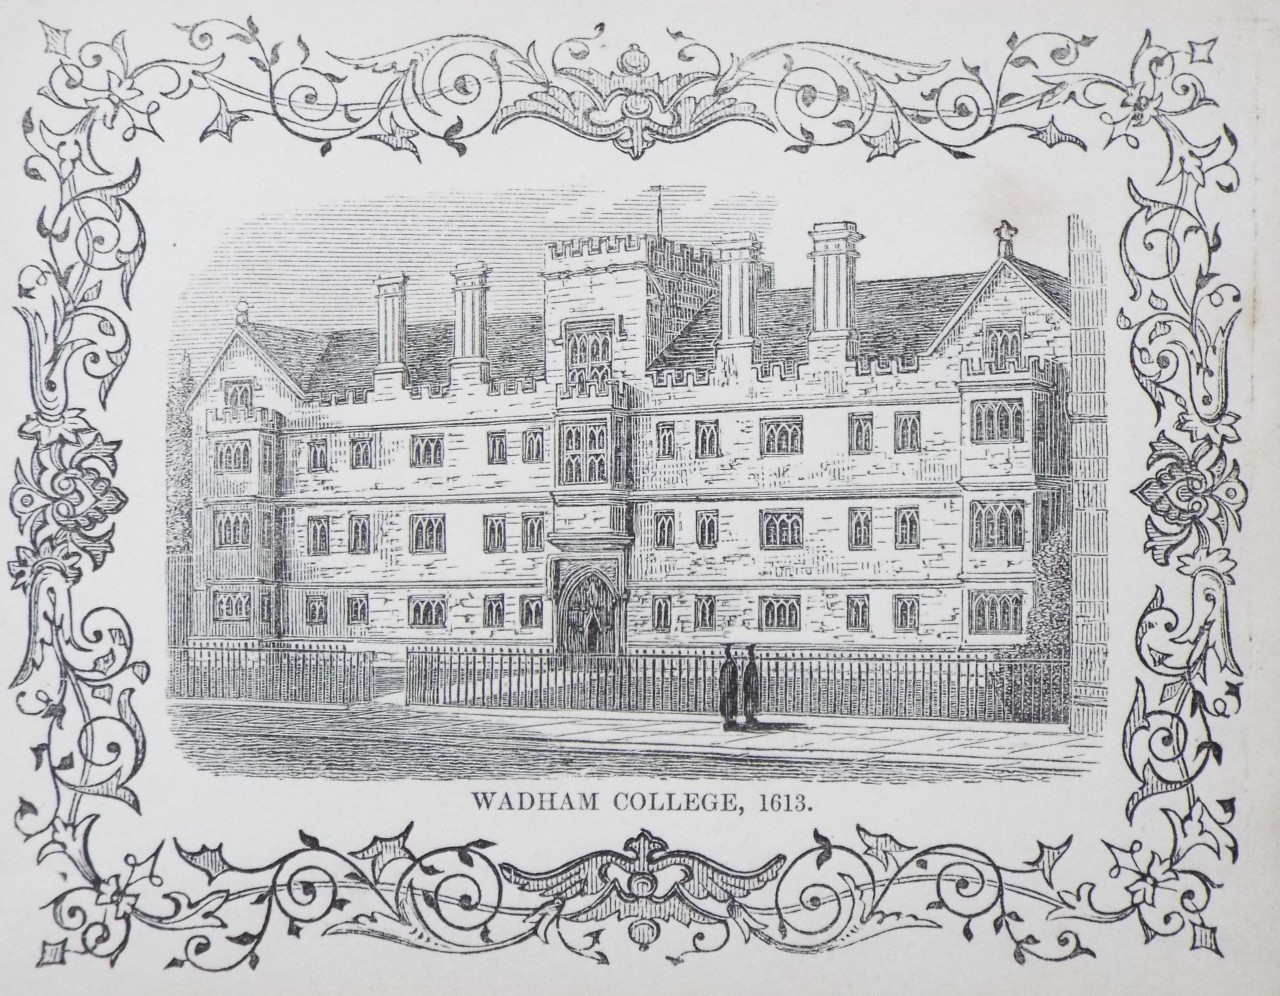 Wood - Wadham College, 1613. - Whittock